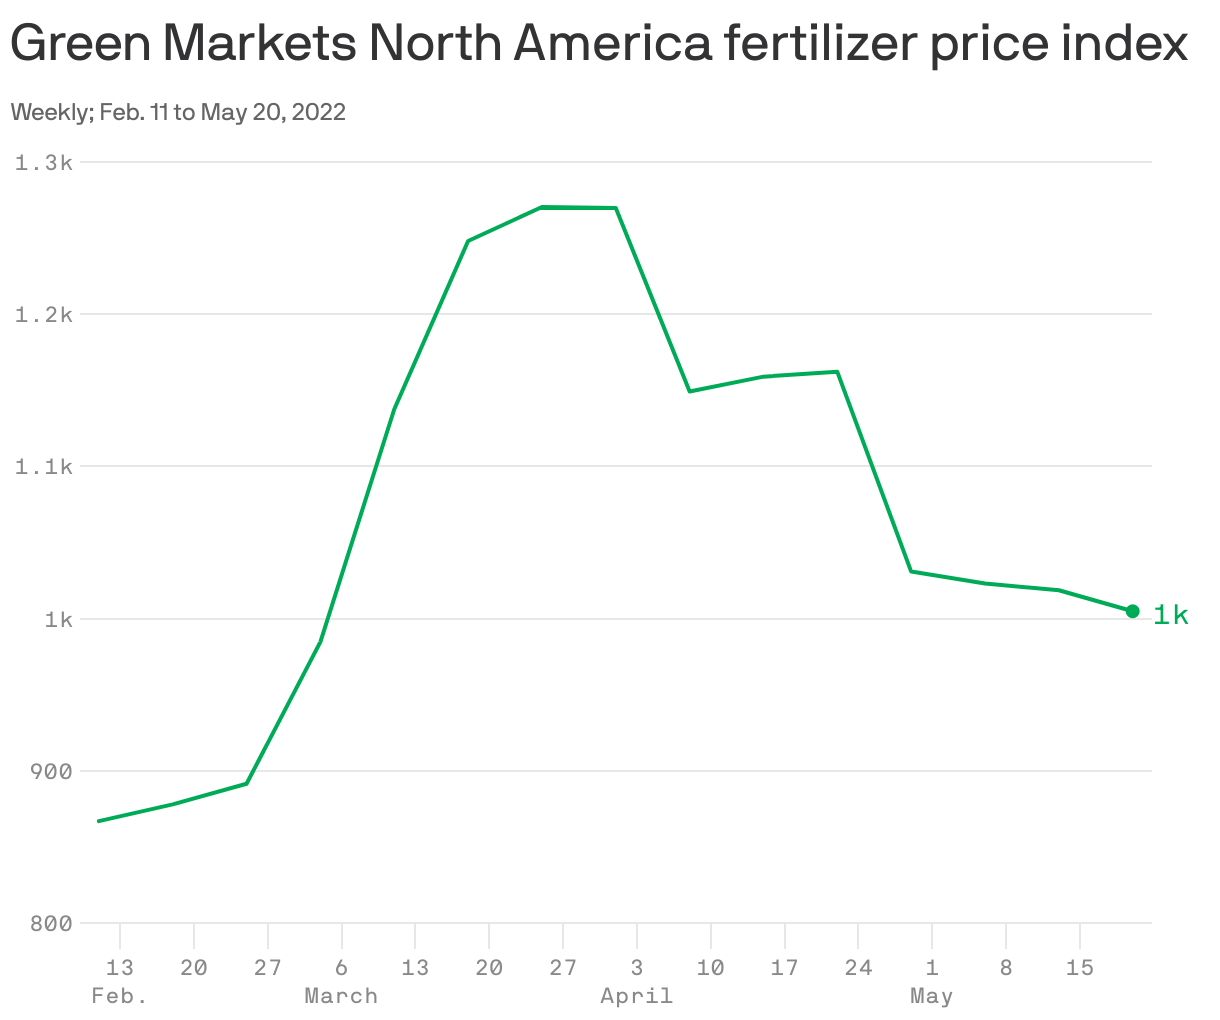 Fertilizer prices